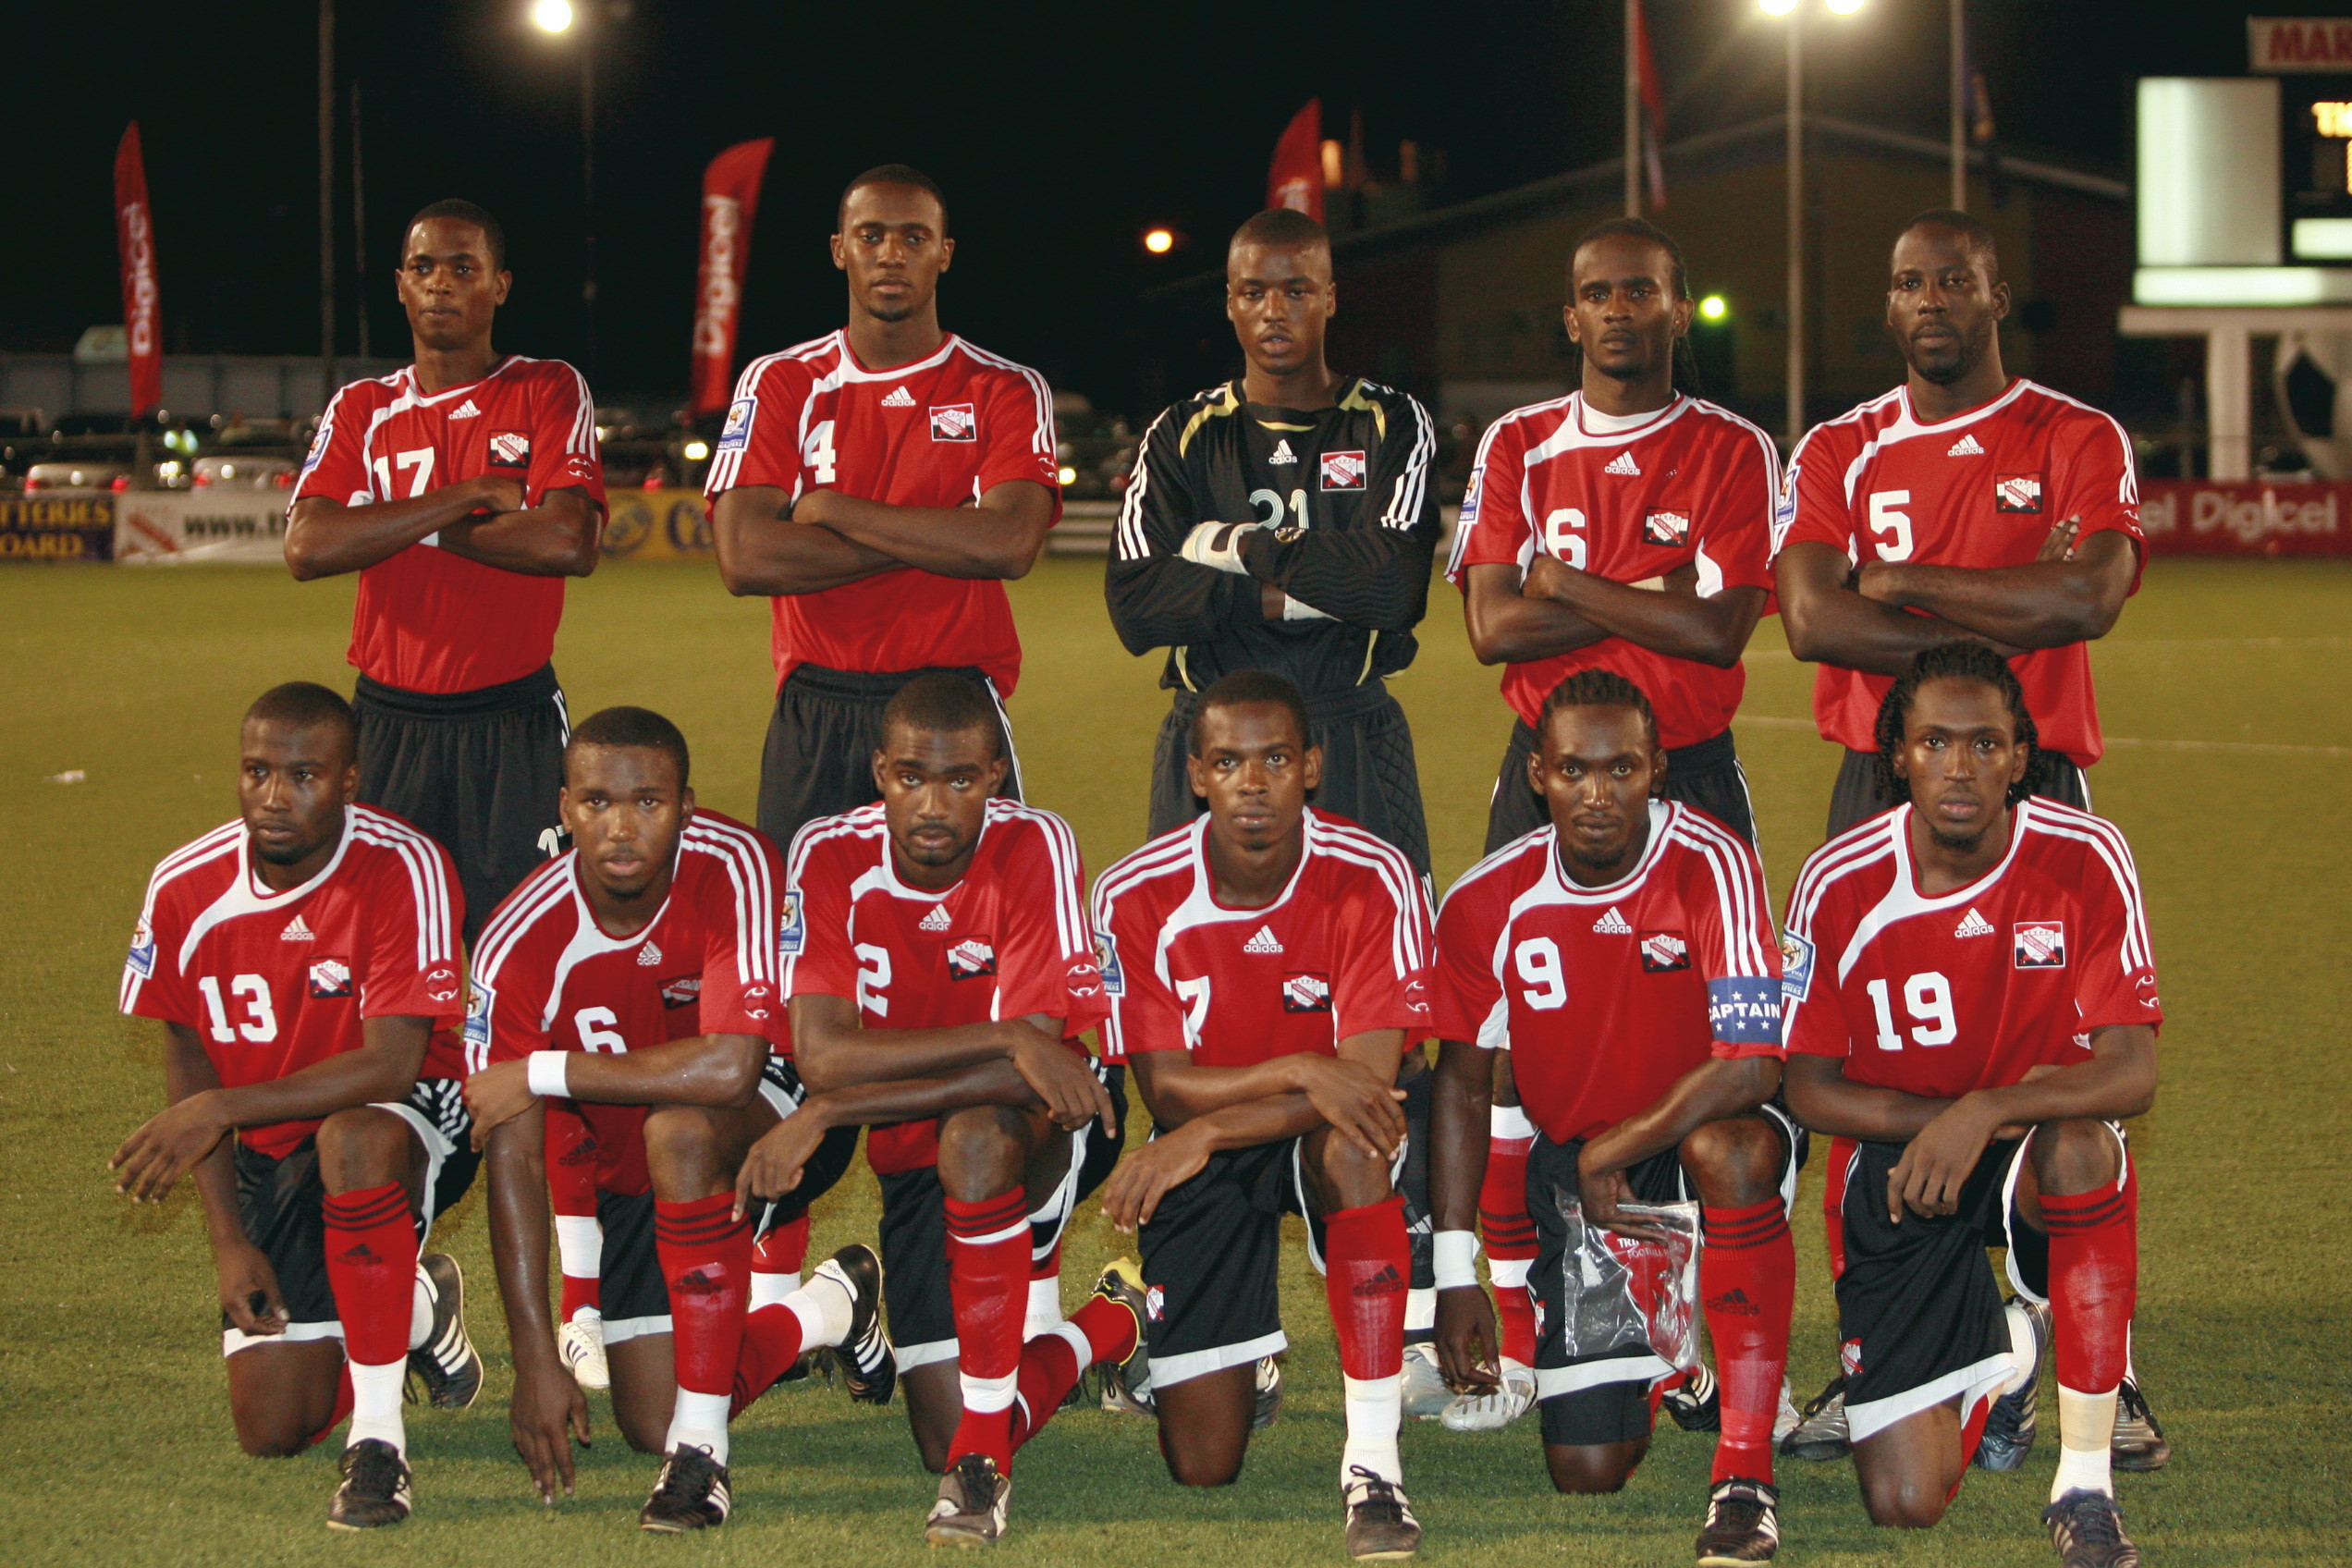 T&T Team line up vs Antigua (Photo: Digicelfotball.com).